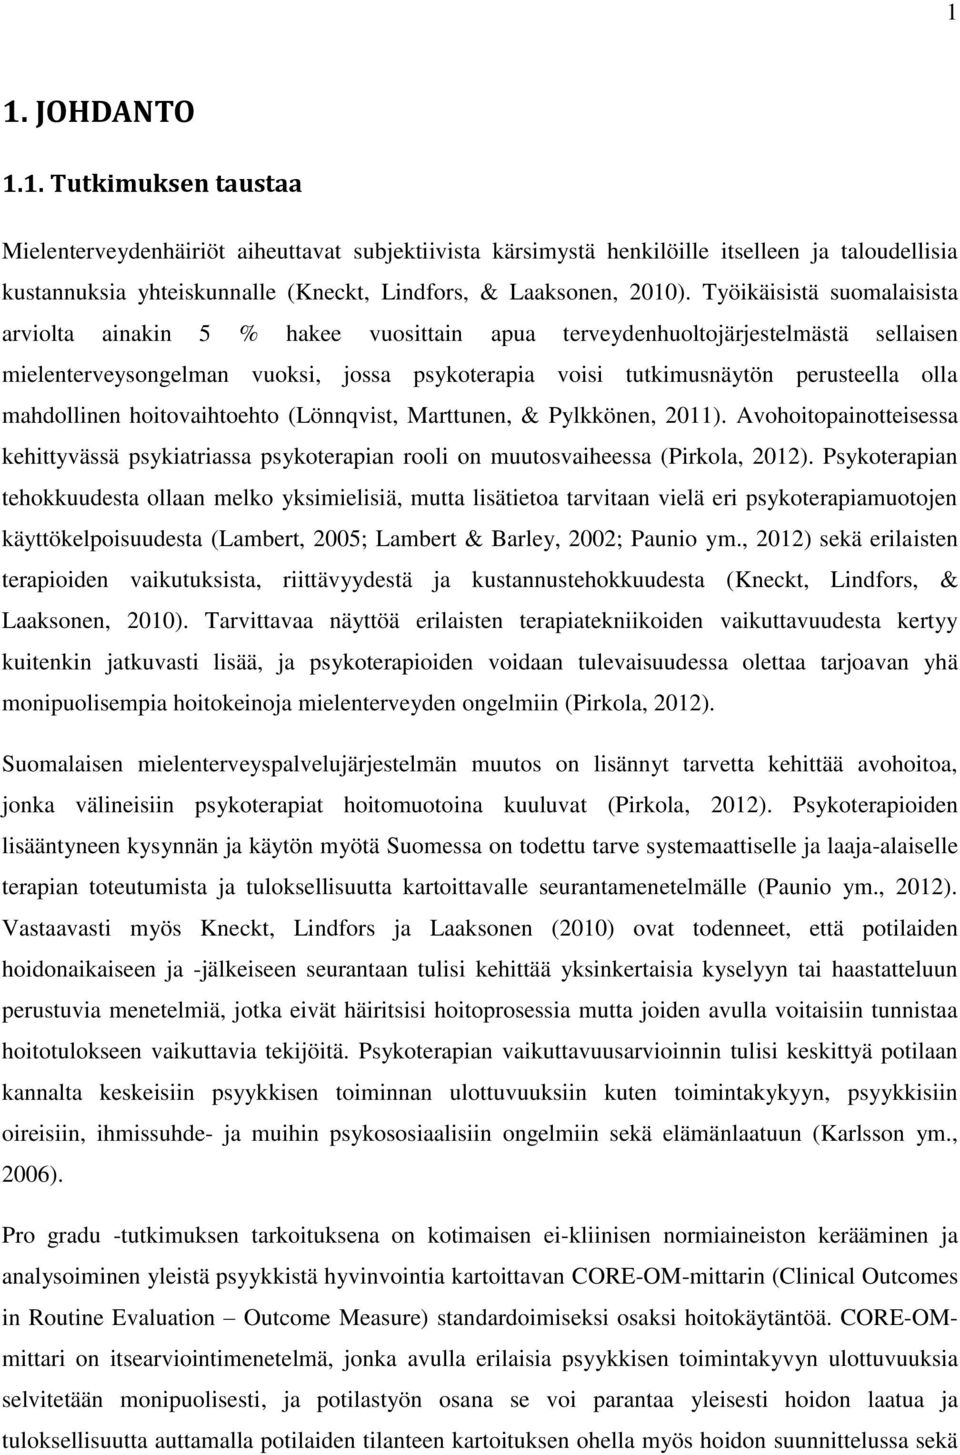 mahdollinen hoitovaihtoehto (Lönnqvist, Marttunen, & Pylkkönen, 2011). Avohoitopainotteisessa kehittyvässä psykiatriassa psykoterapian rooli on muutosvaiheessa (Pirkola, 2012).